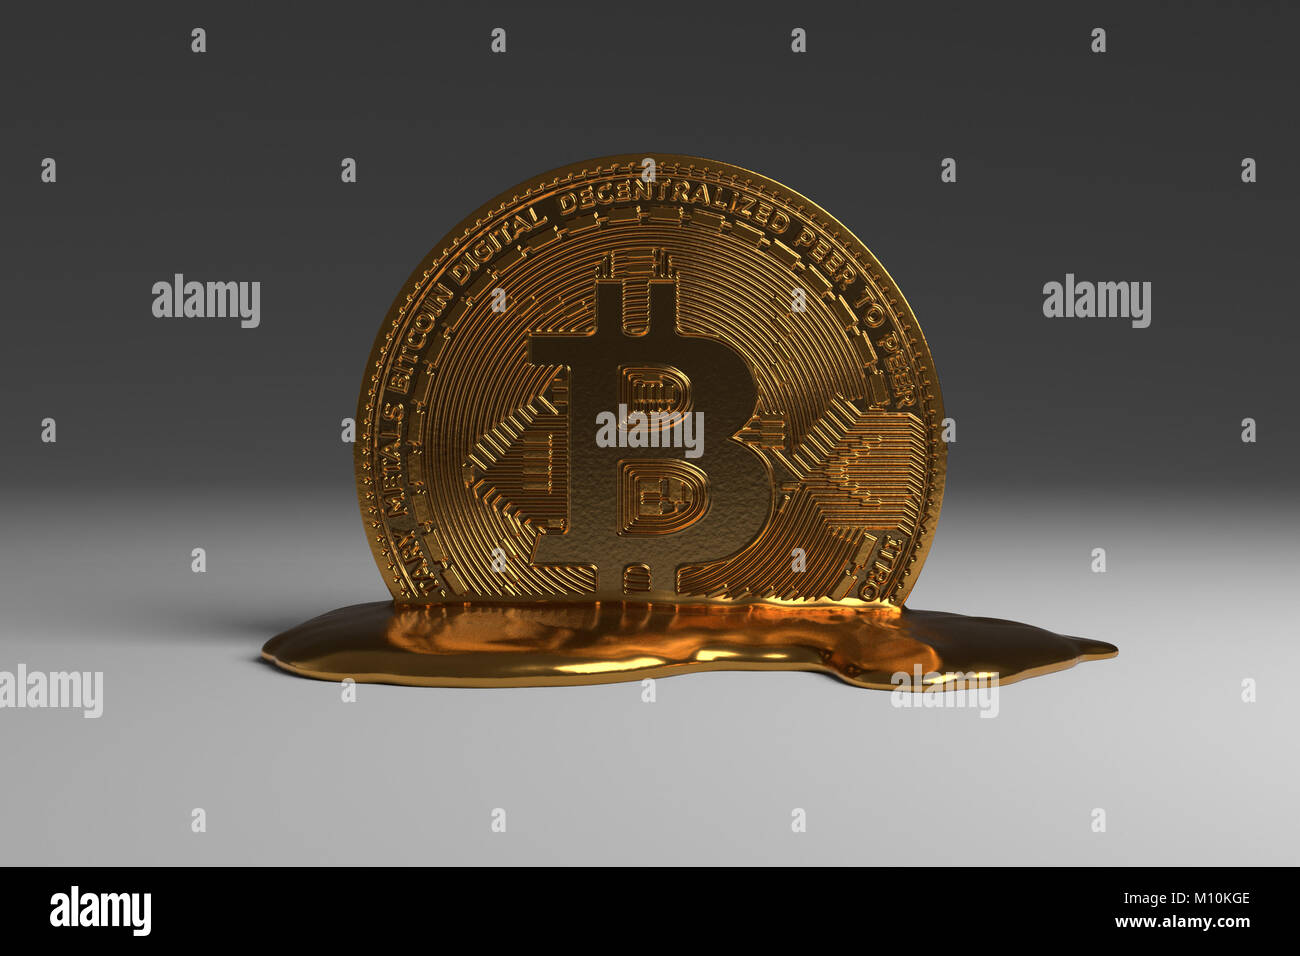 Melting Bitcoin Stock Photo